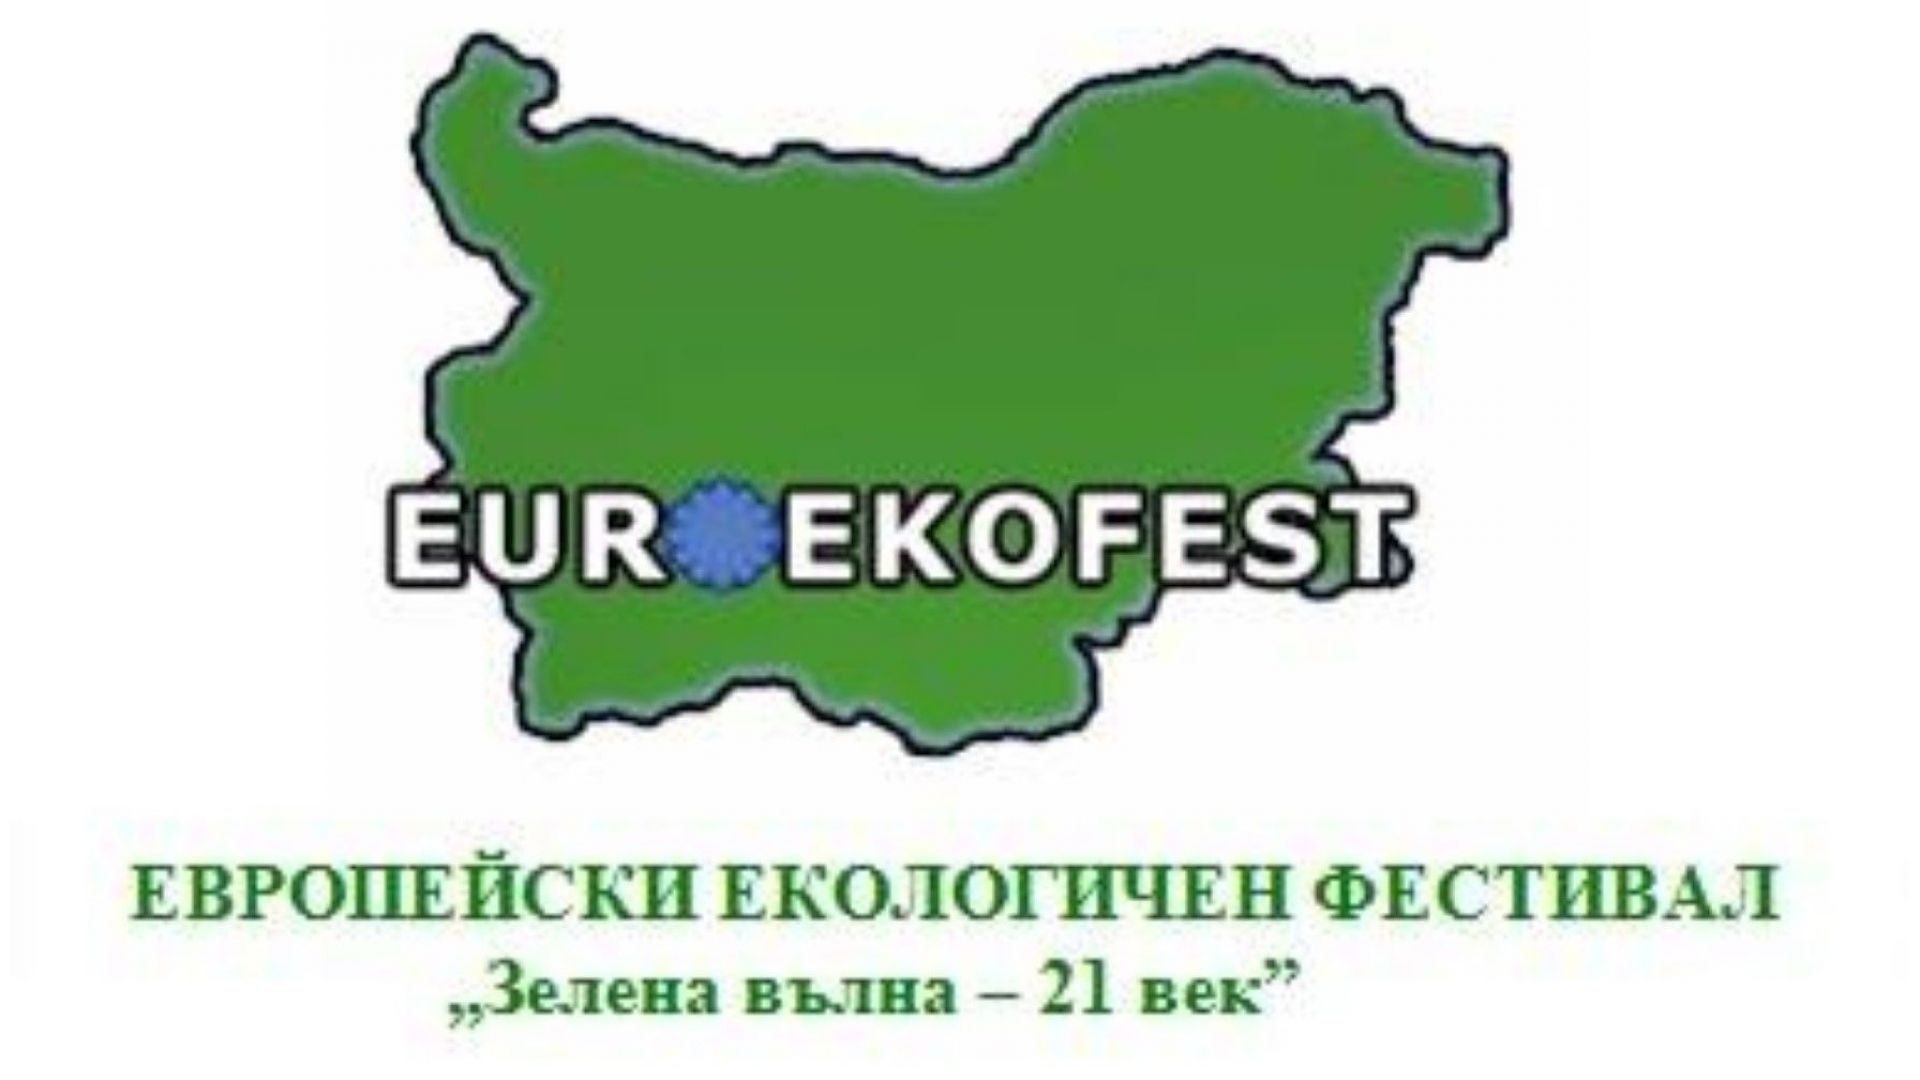 Европейски екологичен фестивал "Зелена вълна - 21 век"